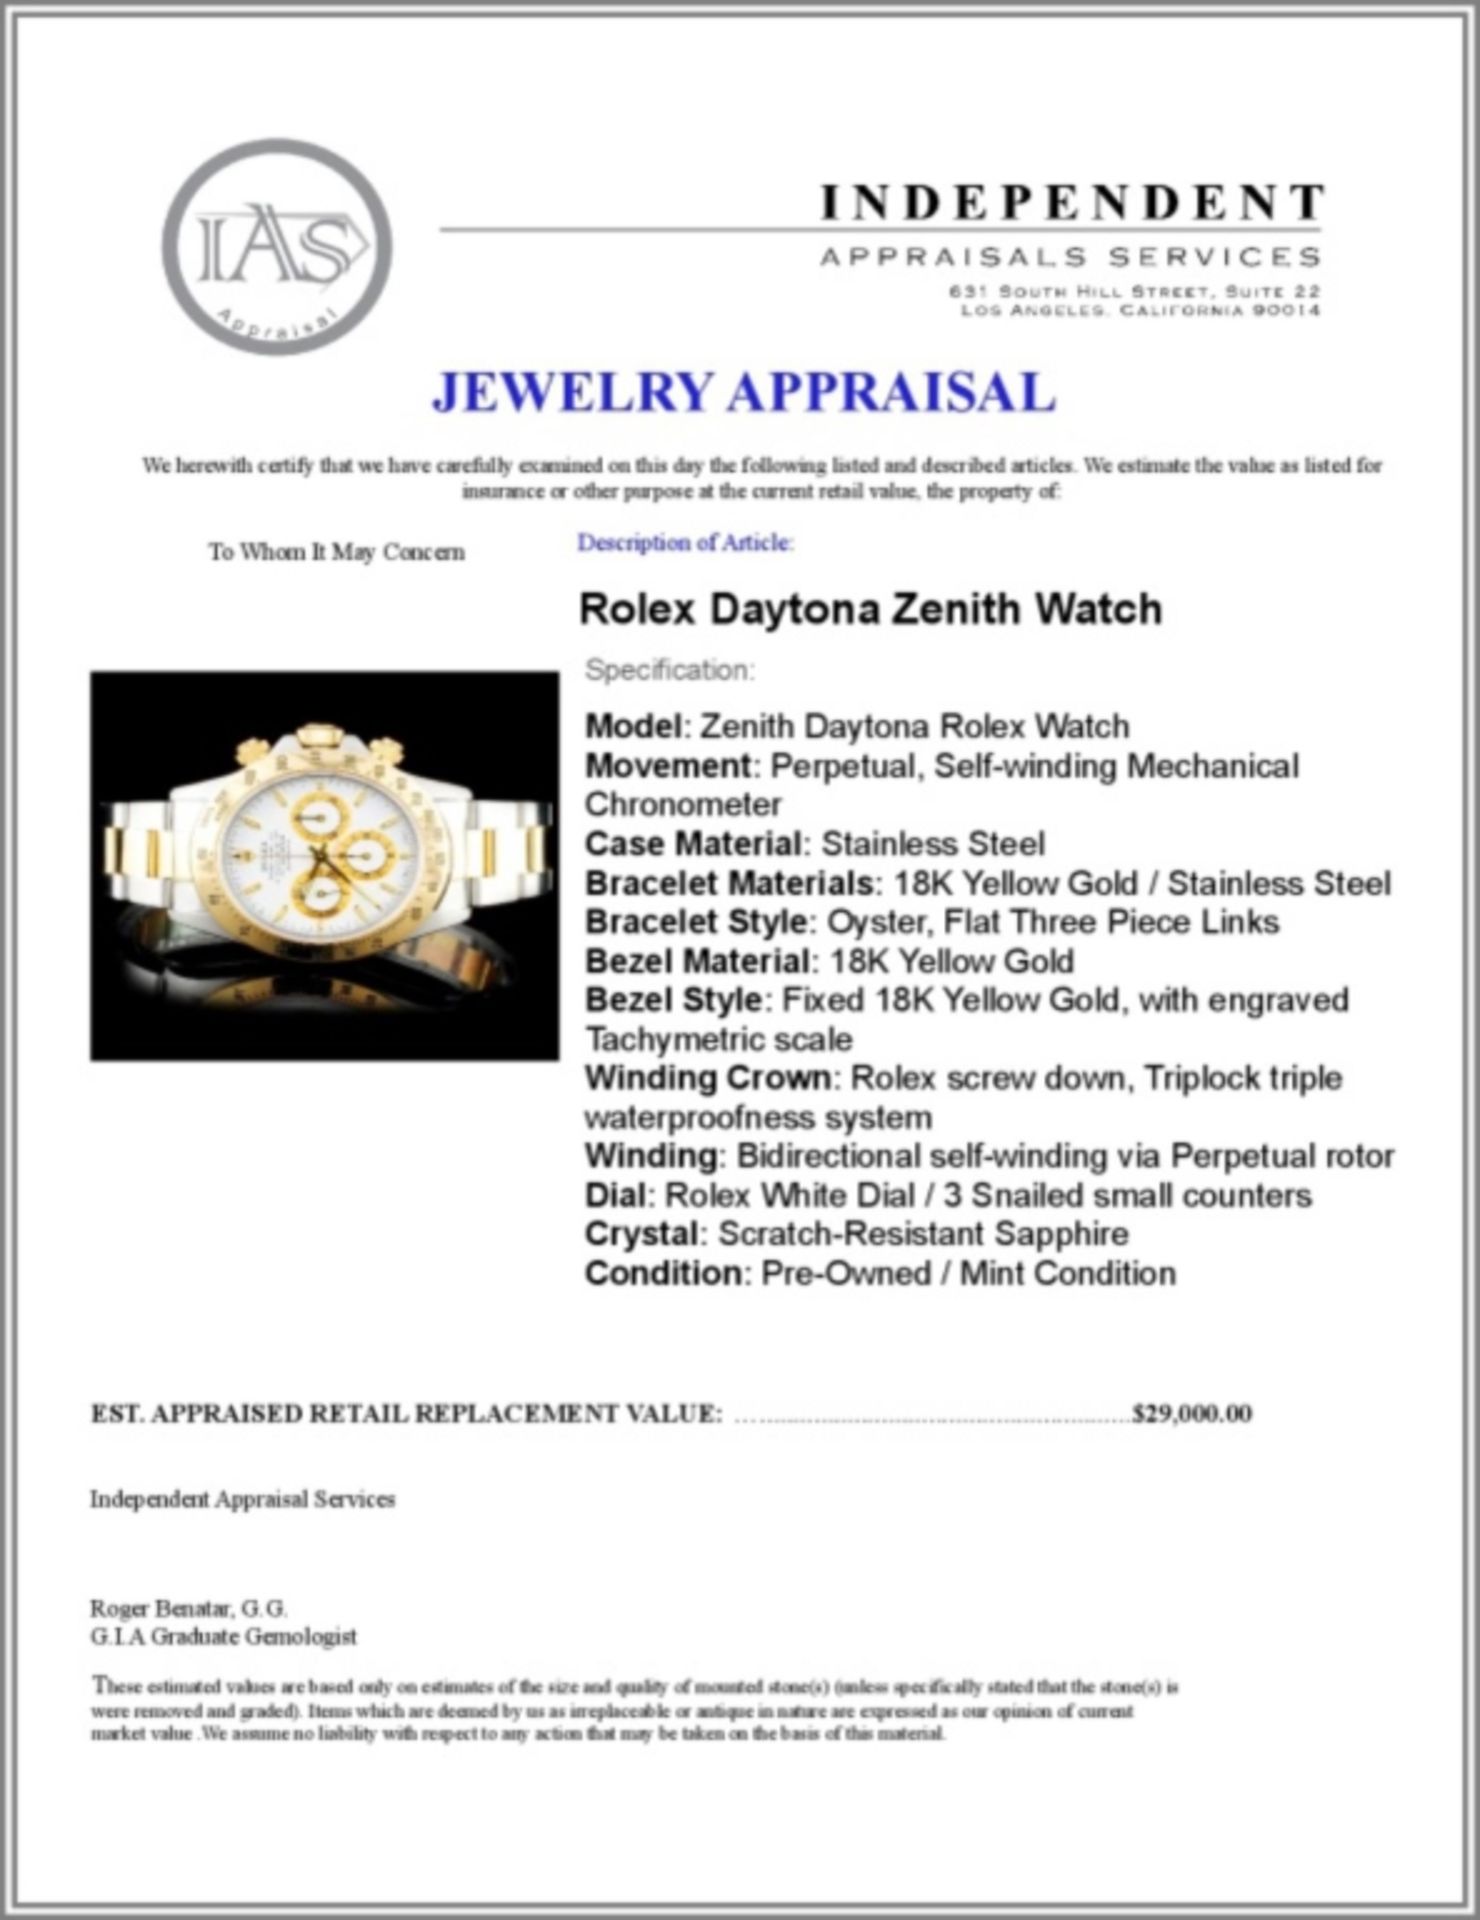 Rolex TwoTone Daytona Zenith Wristwatch - Image 6 of 6